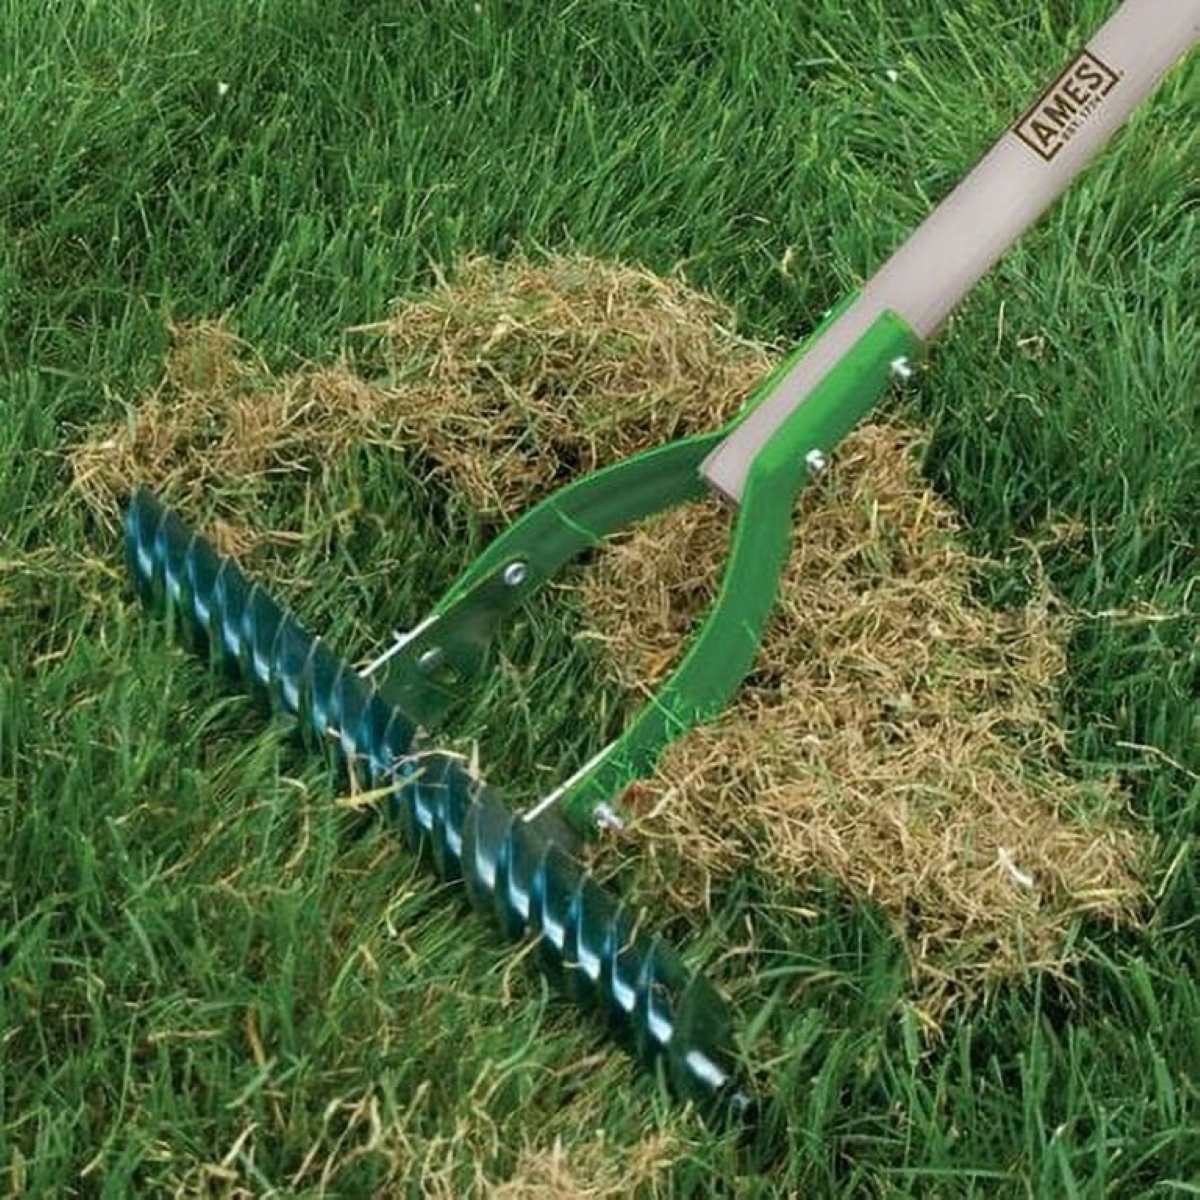 Thatching rake used on lawn.